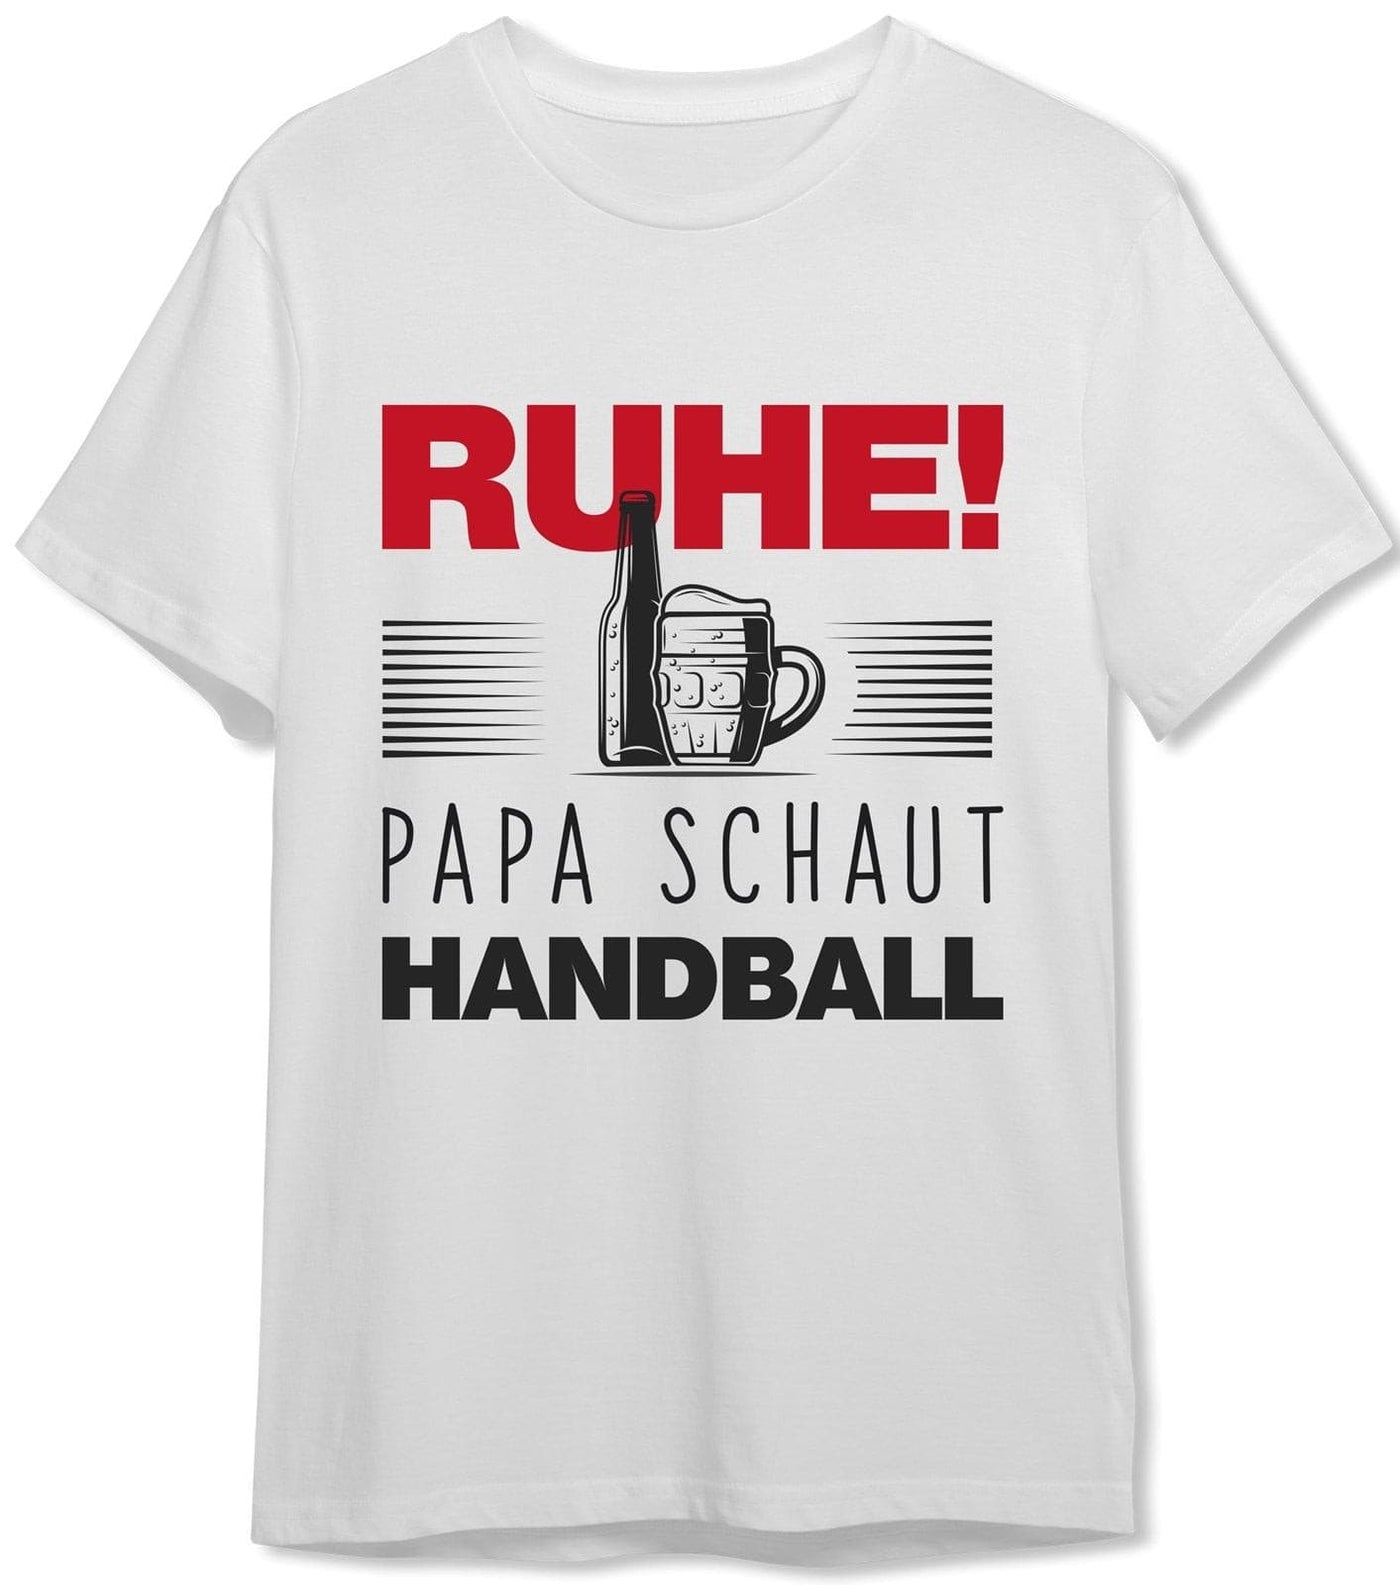 Bild: T-Shirt - Ruhe! Papa schaut Handball Geschenkidee